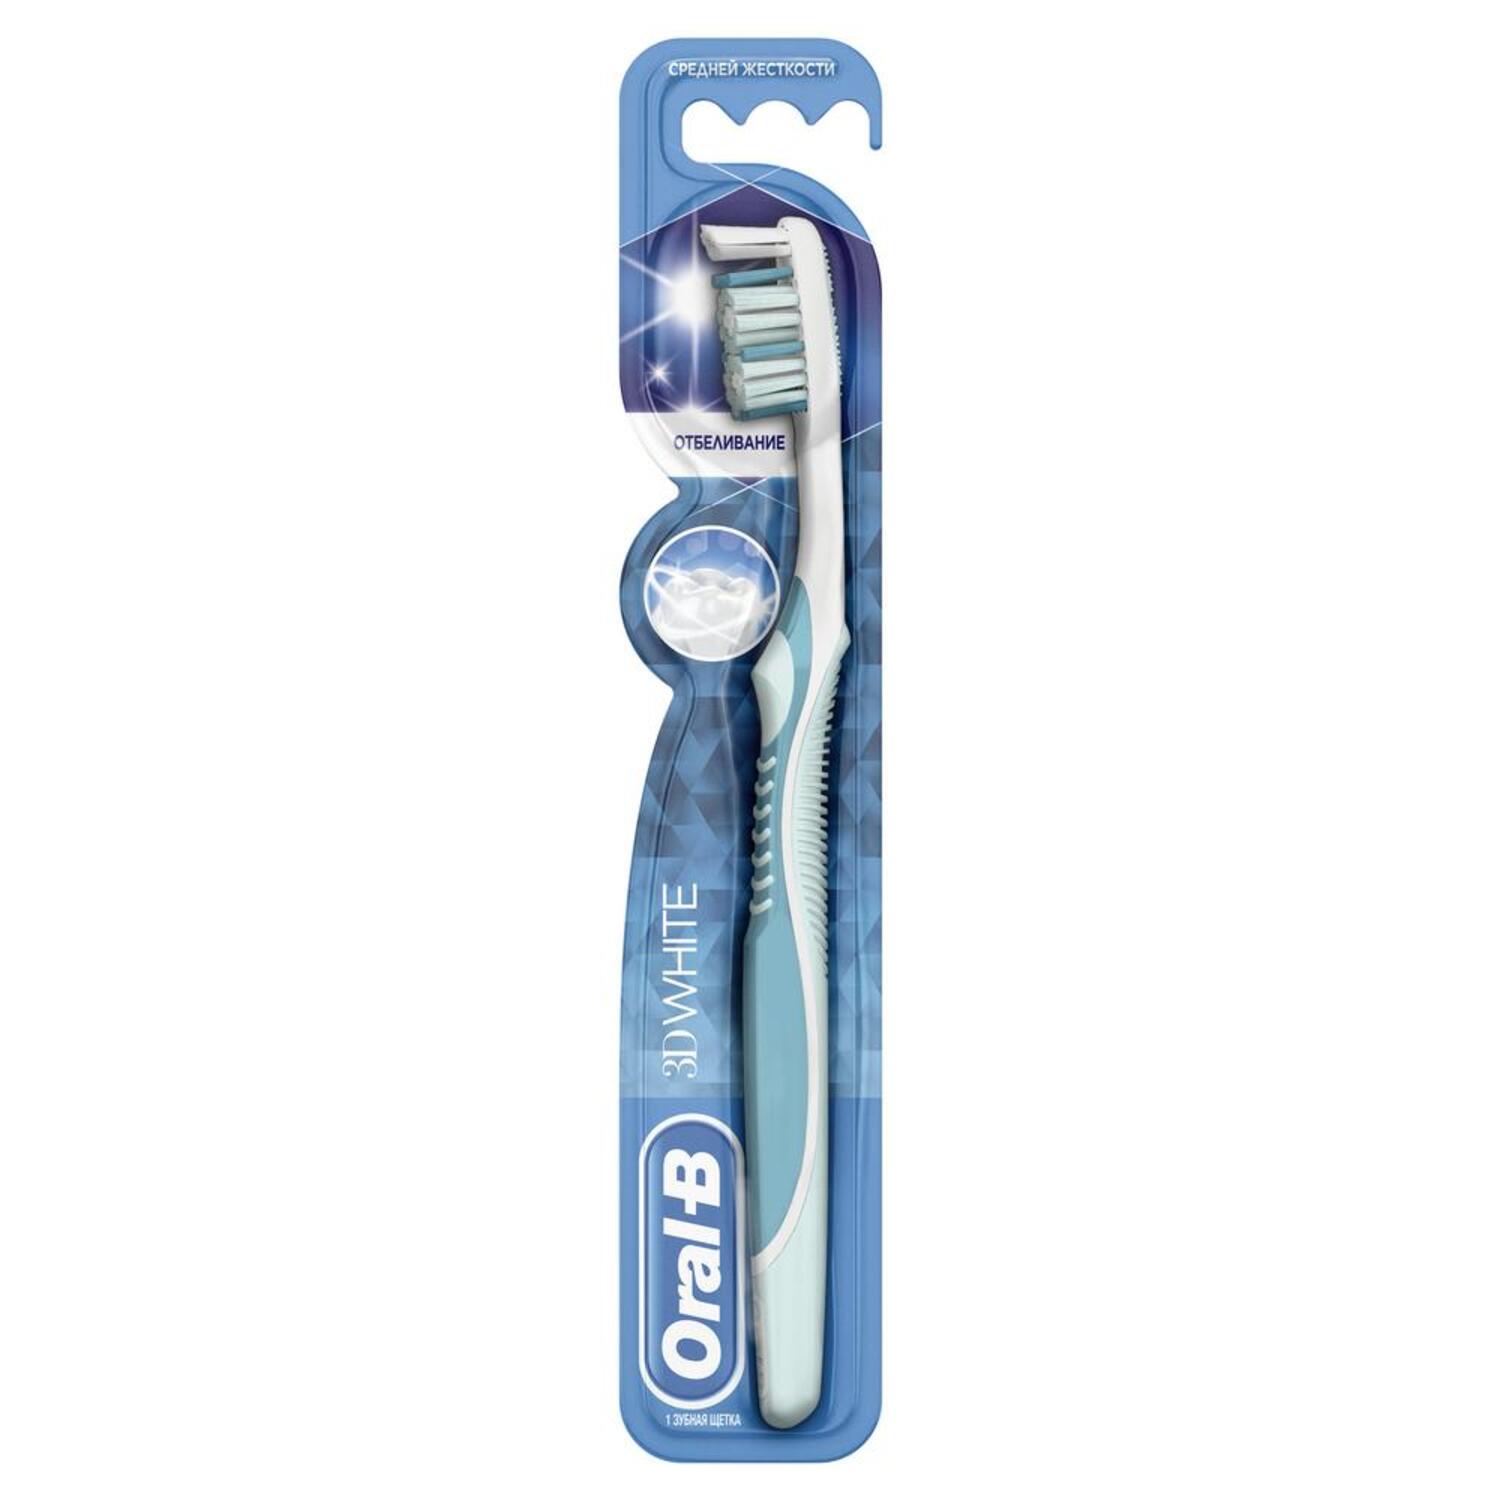 Купить Орал-Б щетка зубная 3D Вайт Отбеливание средняя, PROCTER & GAMBLE